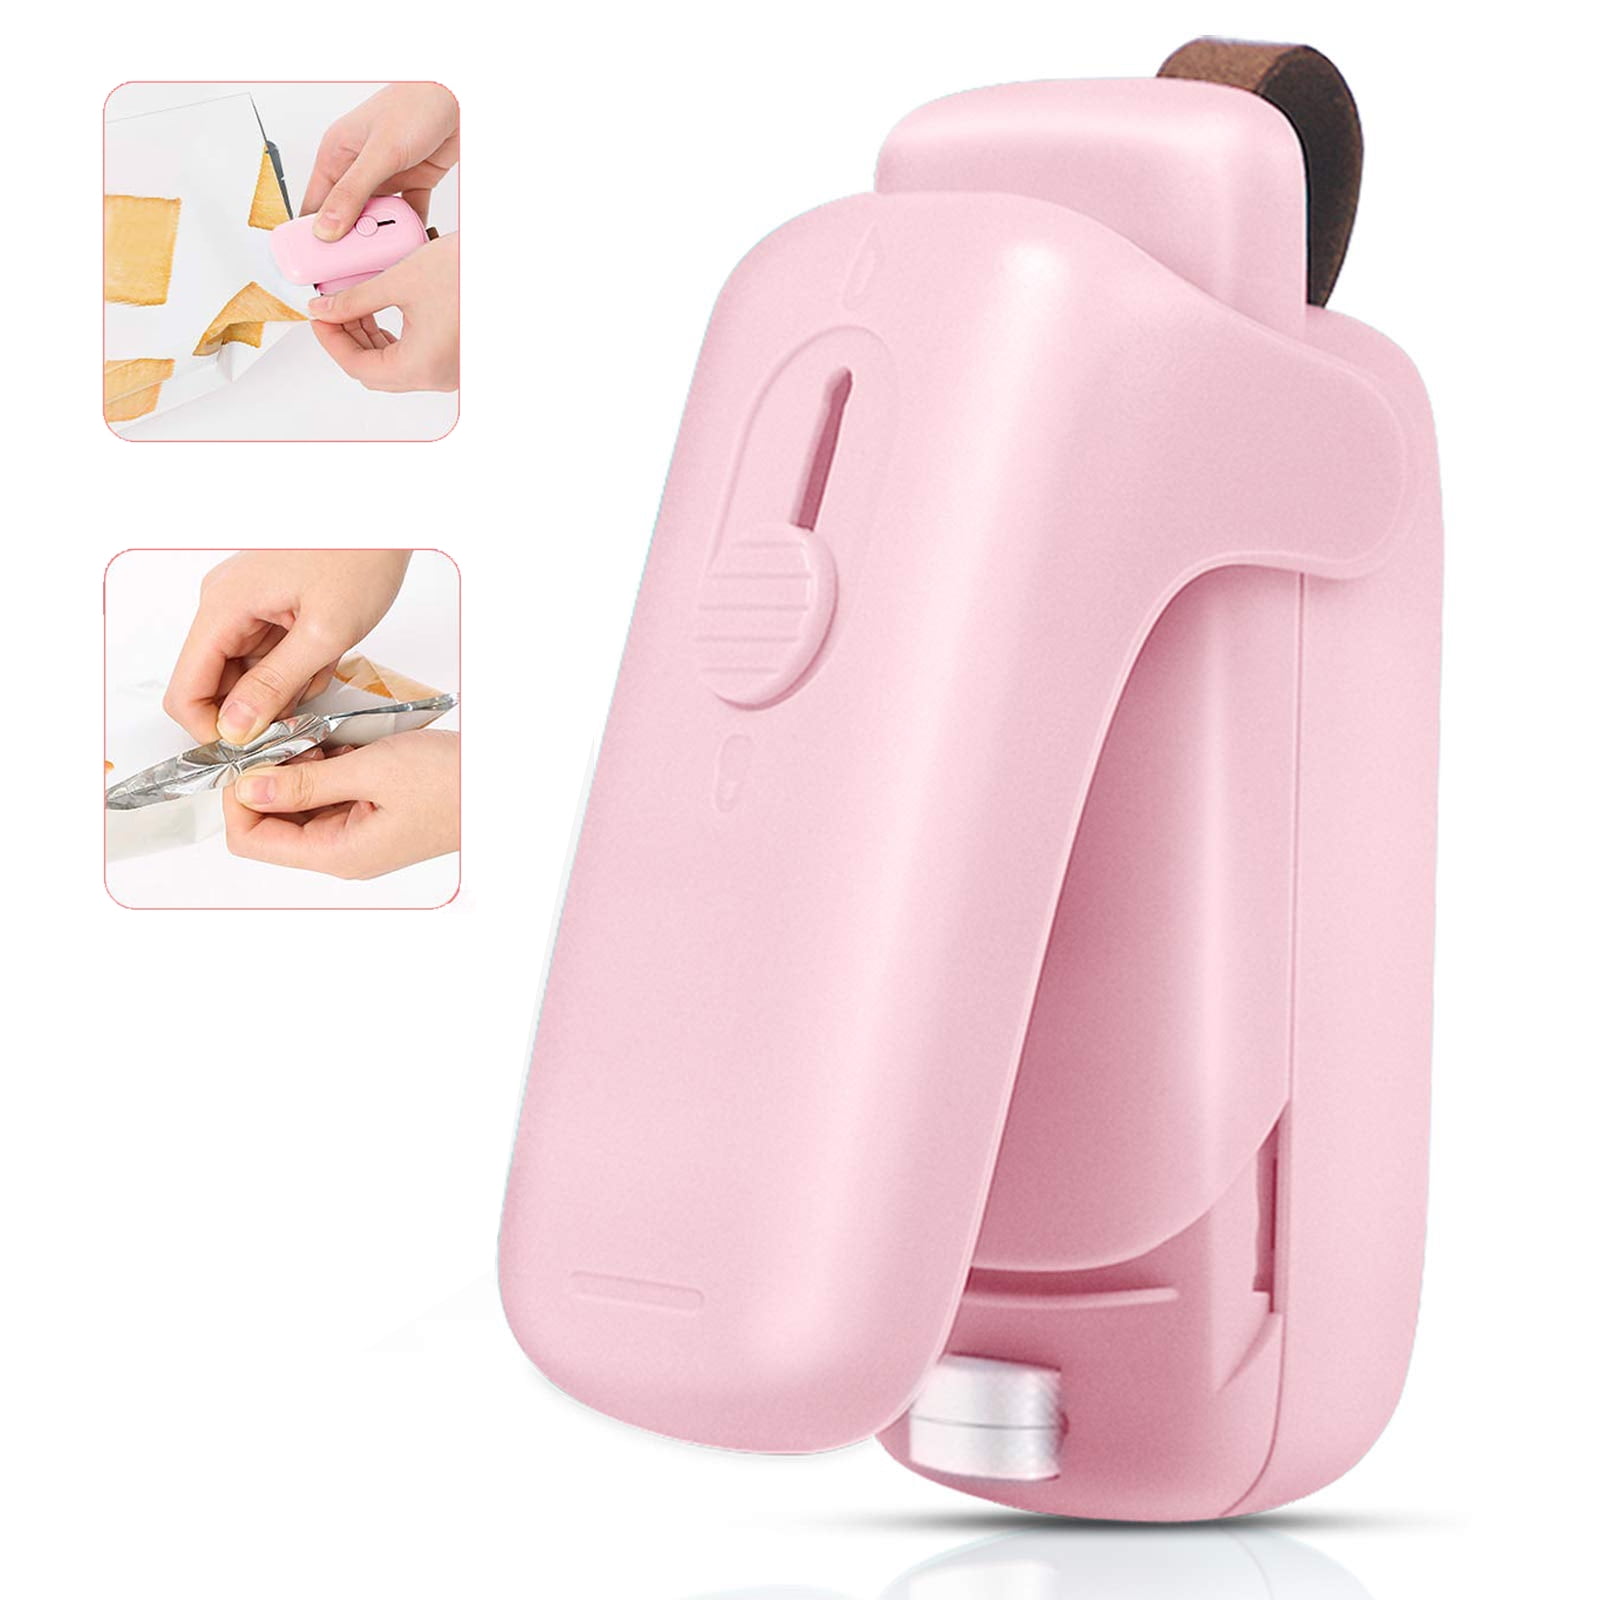 Portable Bag Sealer Handheld Packing Bag Sealer Chip Bag Sealer for Kitchen  Camping Household Bags Home Travel BBQ Pink 